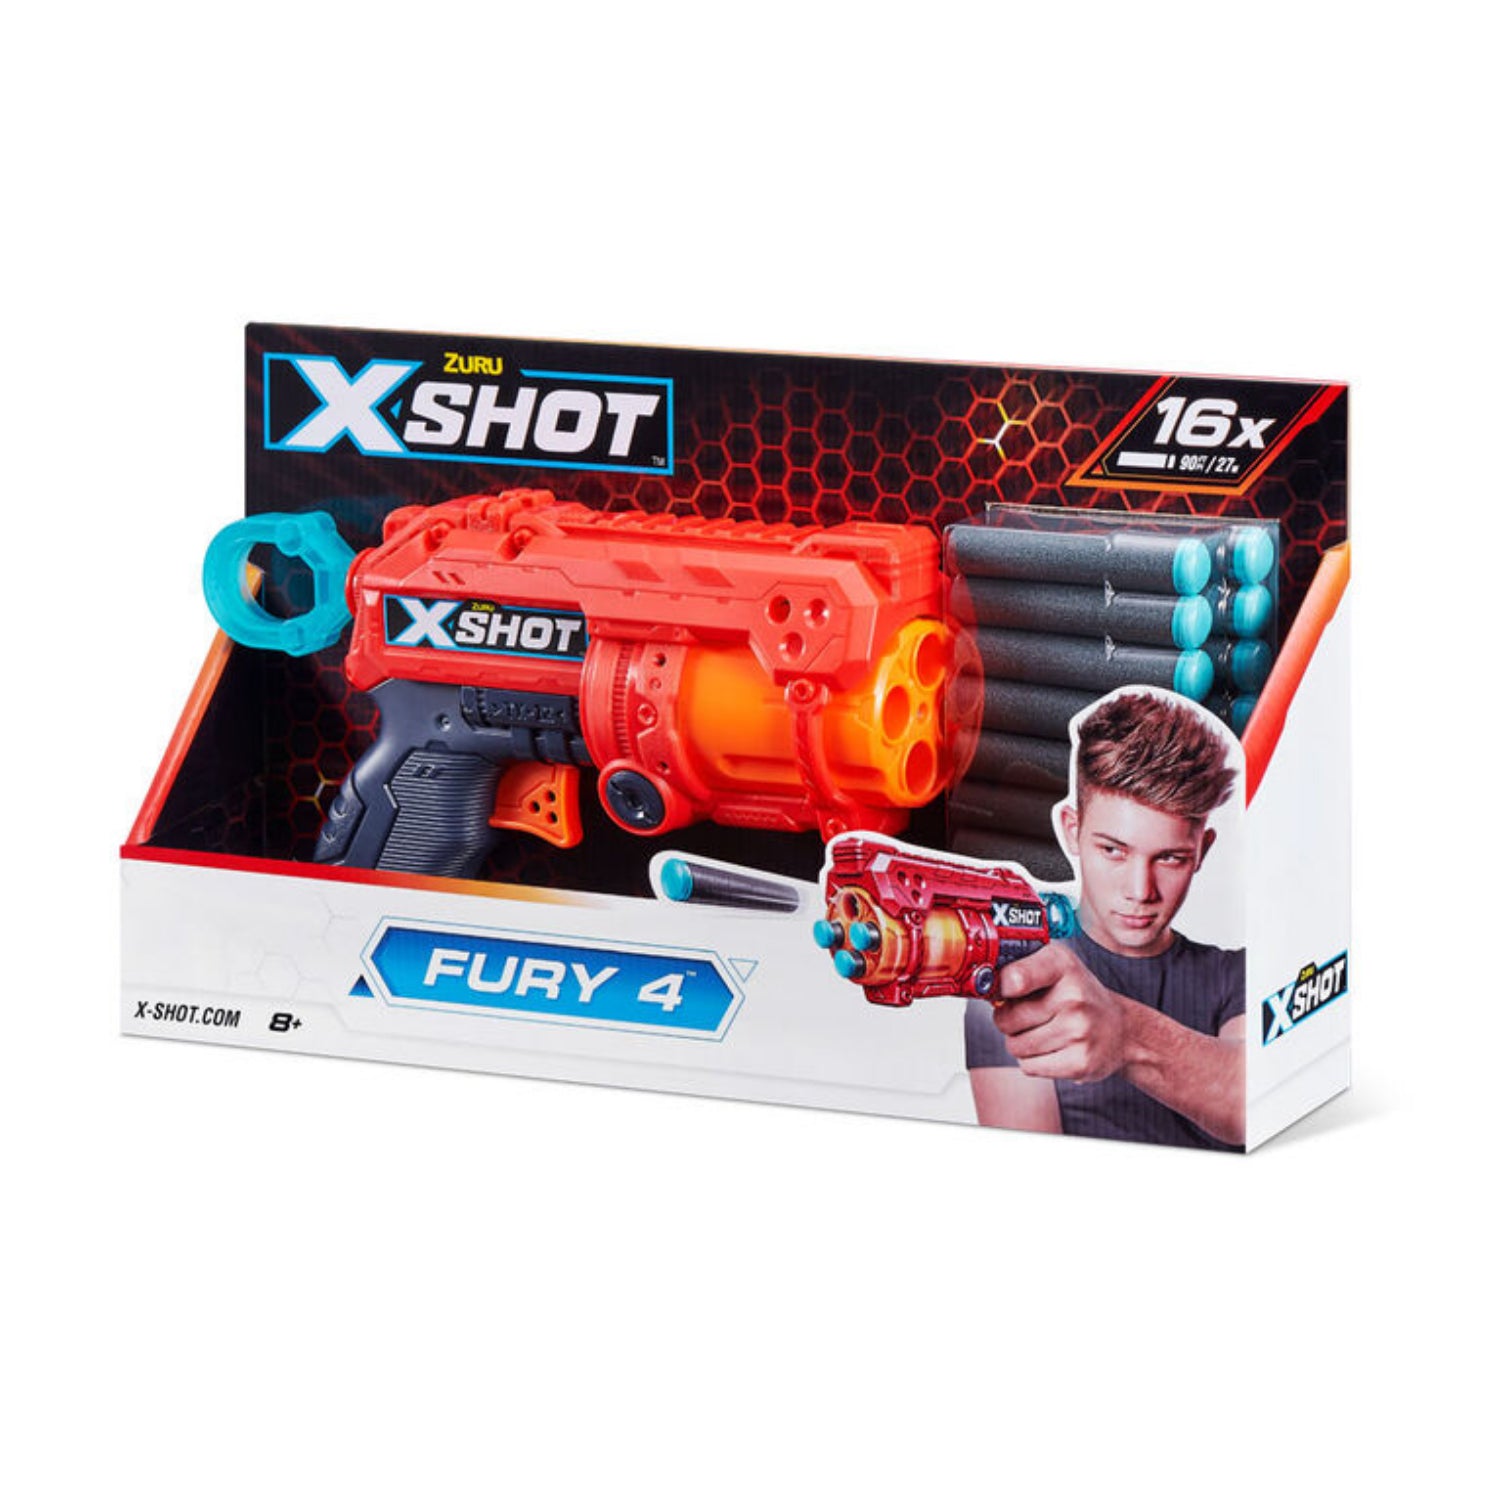 Zuru X-Shot Excel Fury 4 Blaster (16 Darts)